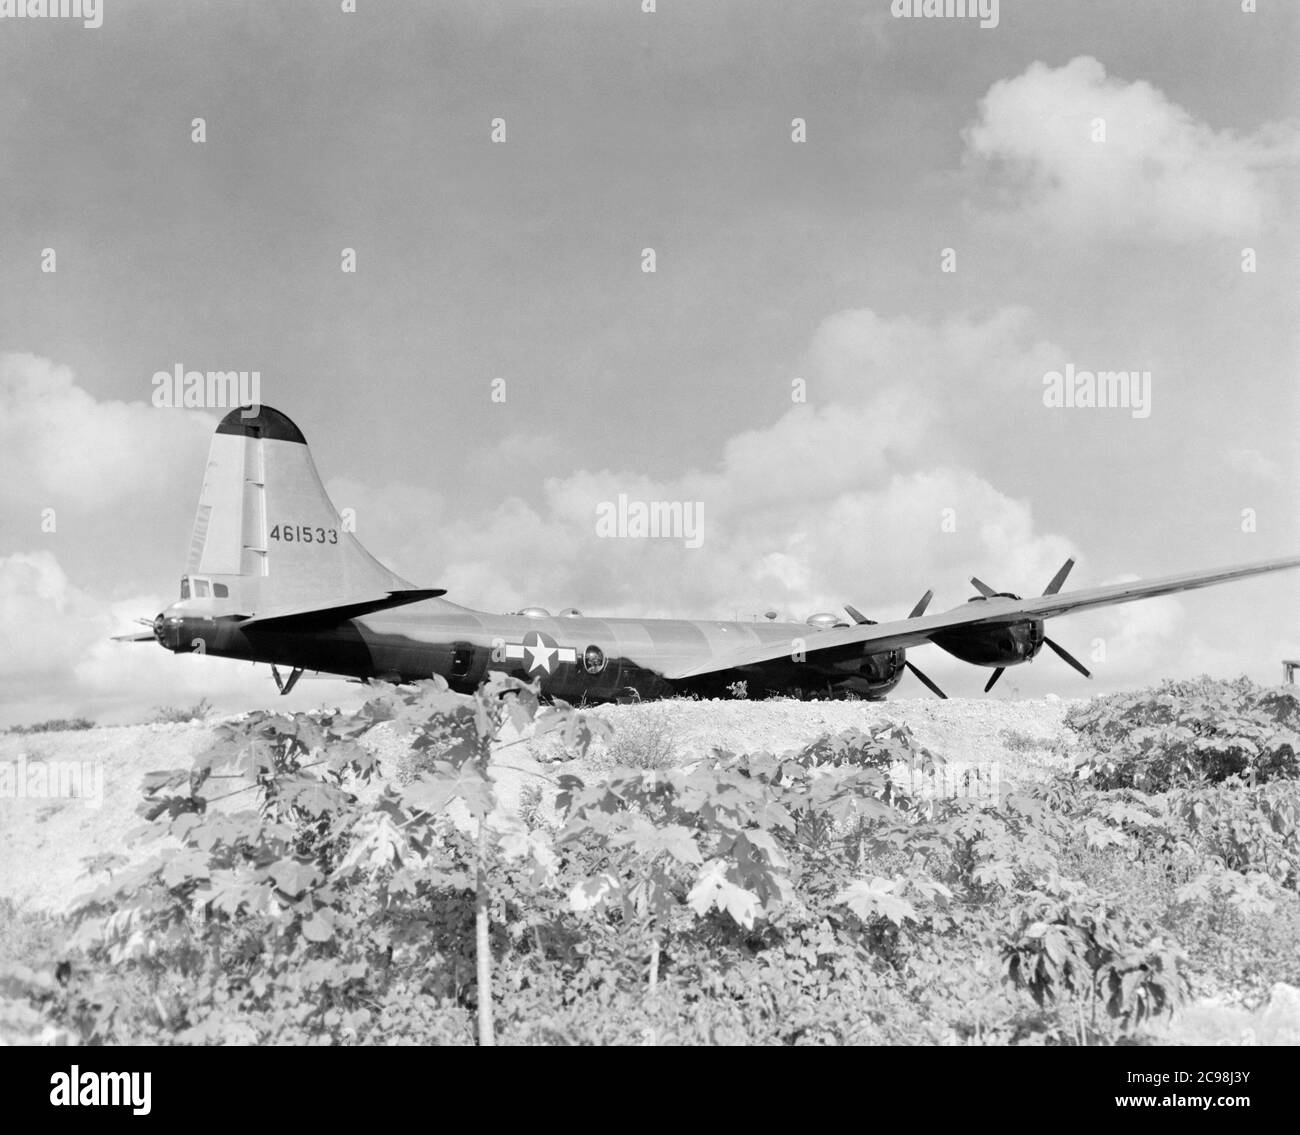 Boeing B-29 Superfortress 461553 auf der Fluglinie. Northfield, Guam, Juli 1945. Zum 75. Jahrestag des V-J Day hat die Consoli Collection vier Fotoessays von U.S. Navy LT. (j.g.) veröffentlicht. Joseph J. Consoli. Die Fotos wurden zwischen Juli und Dezember 1945 auf den Marianen aufgenommen. Sie dokumentieren das Leben der US-Marine vor und nach der japanischen Kapitulation. Stockfoto